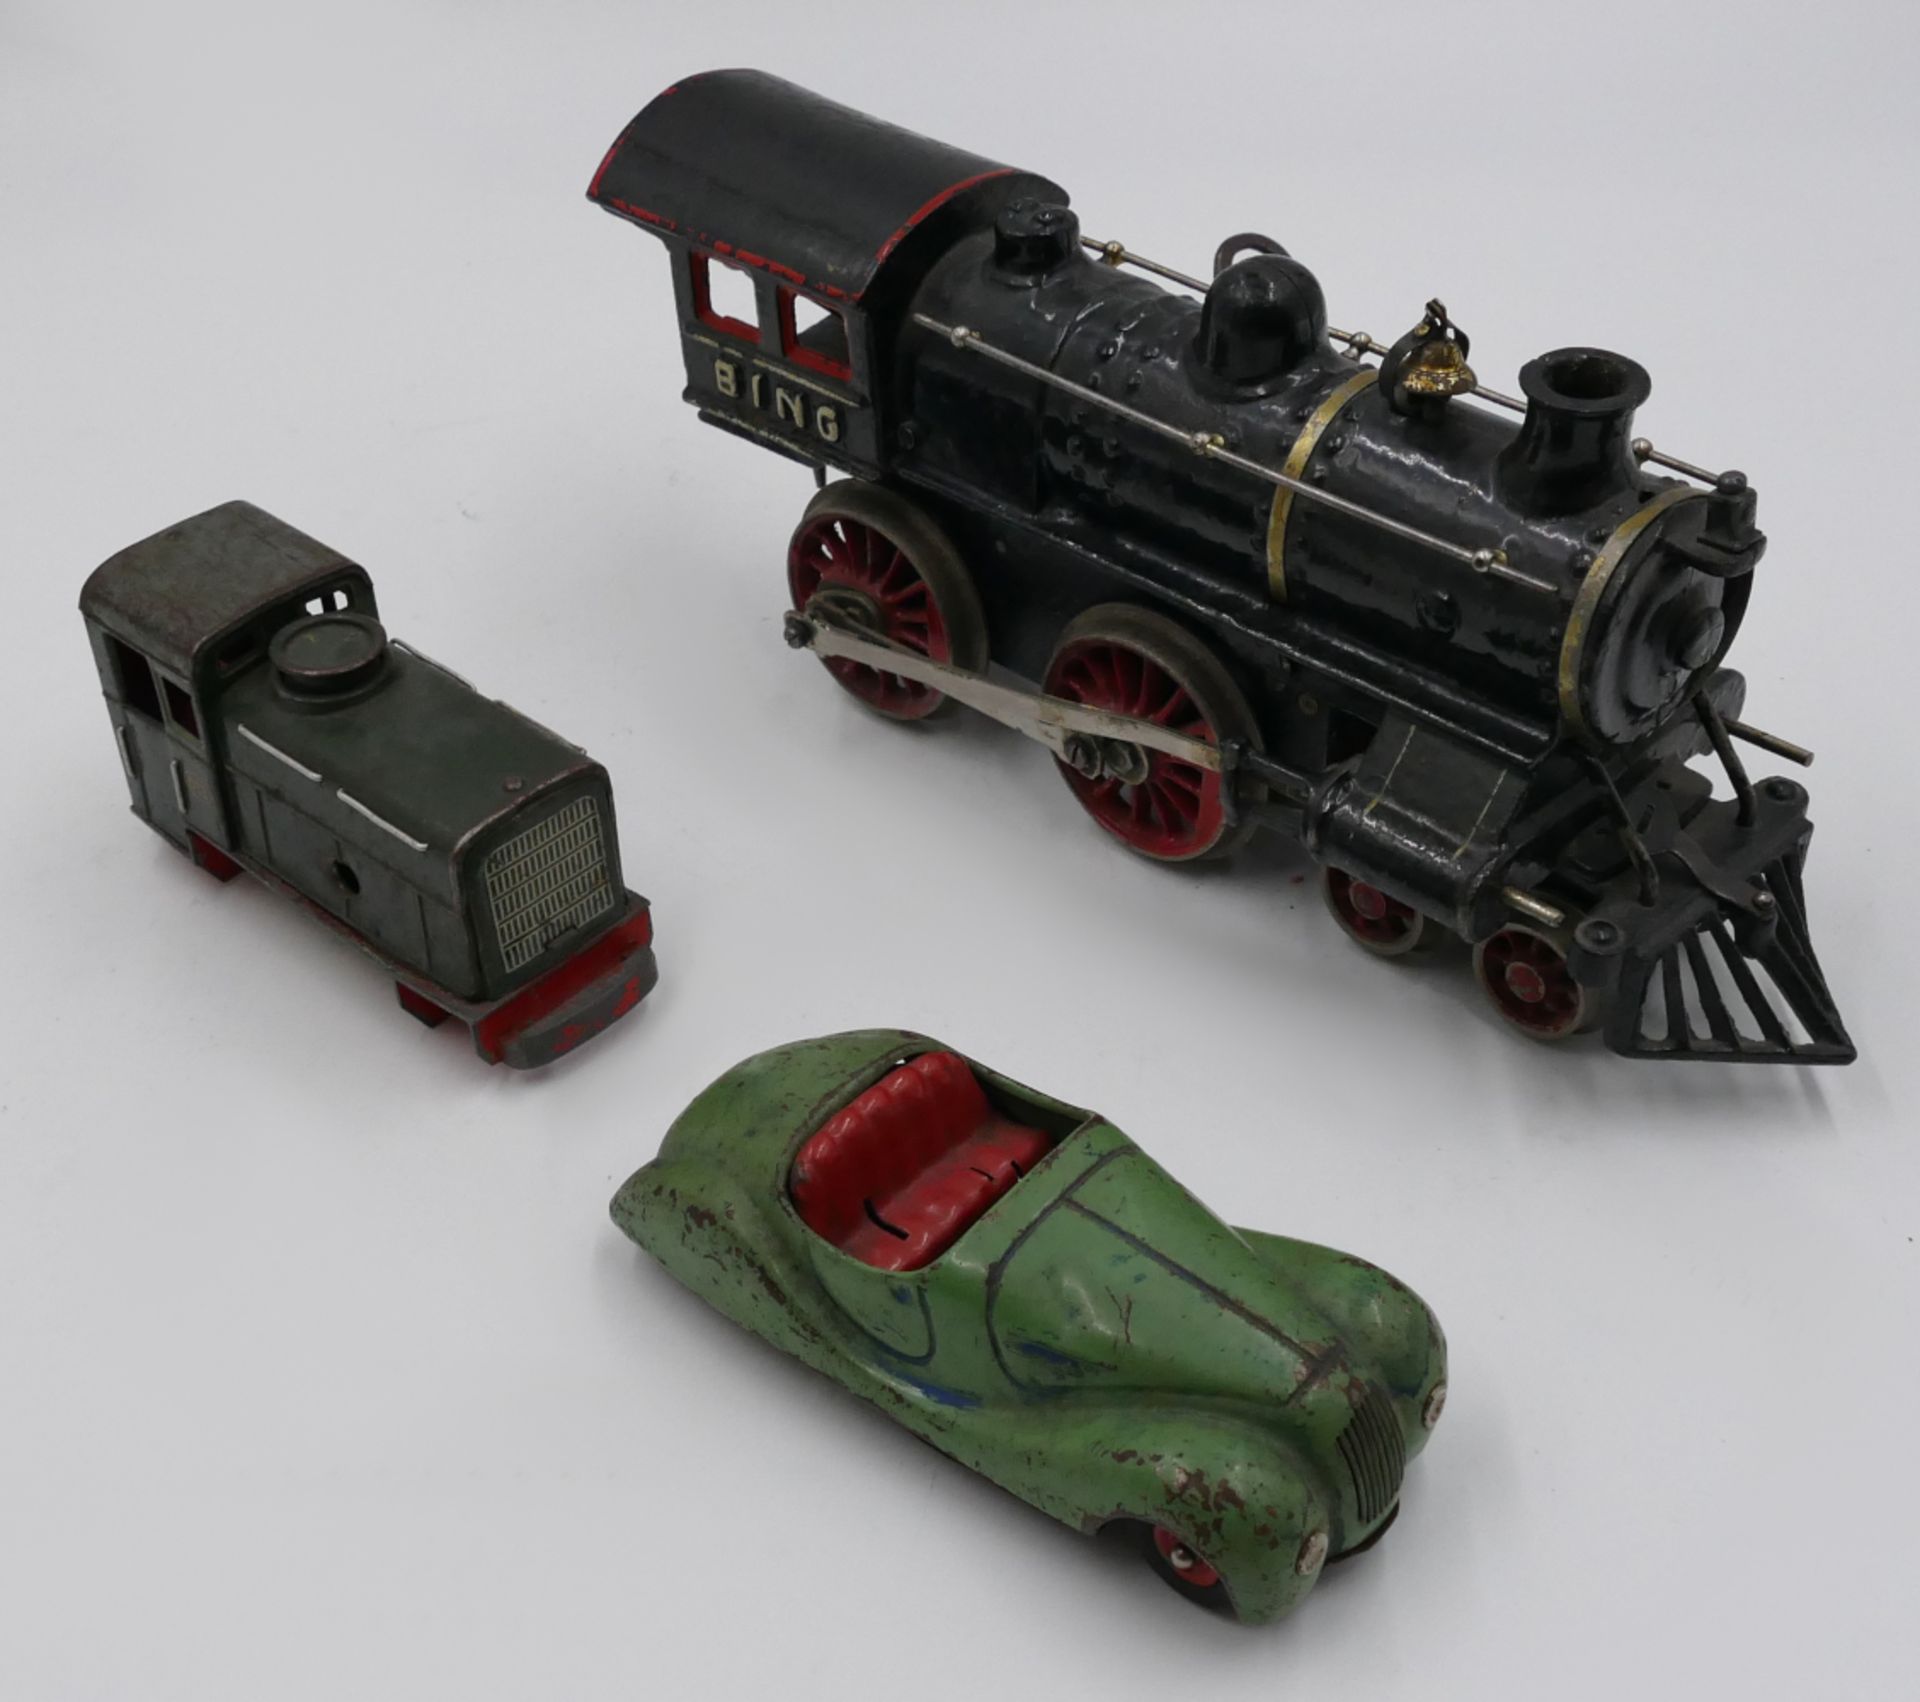 3 Teile Blechspielzeug: 1 Dampflokomotive BING Gusseisen bemalt mit Uhrwerkantrieb und Aufziehschlüs - Bild 2 aus 2